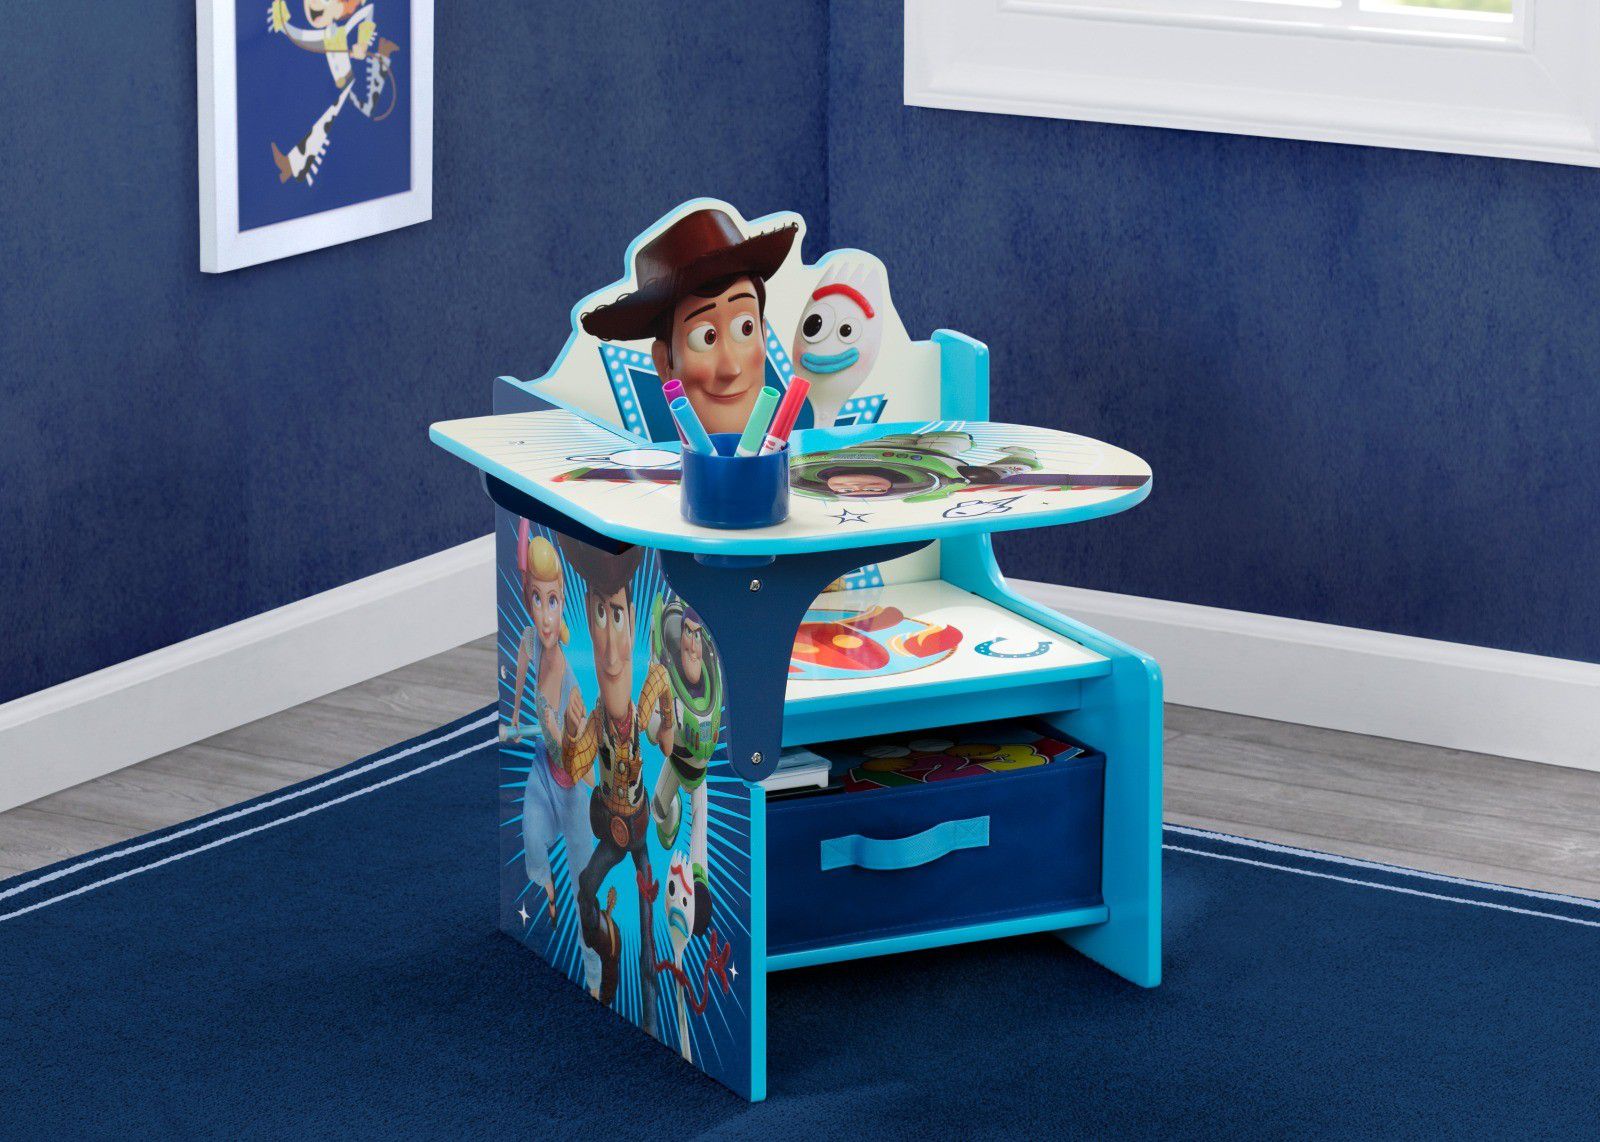 Disney/Pixar Toy Story 4 Chair Desk with Storage Bin by Delta Children